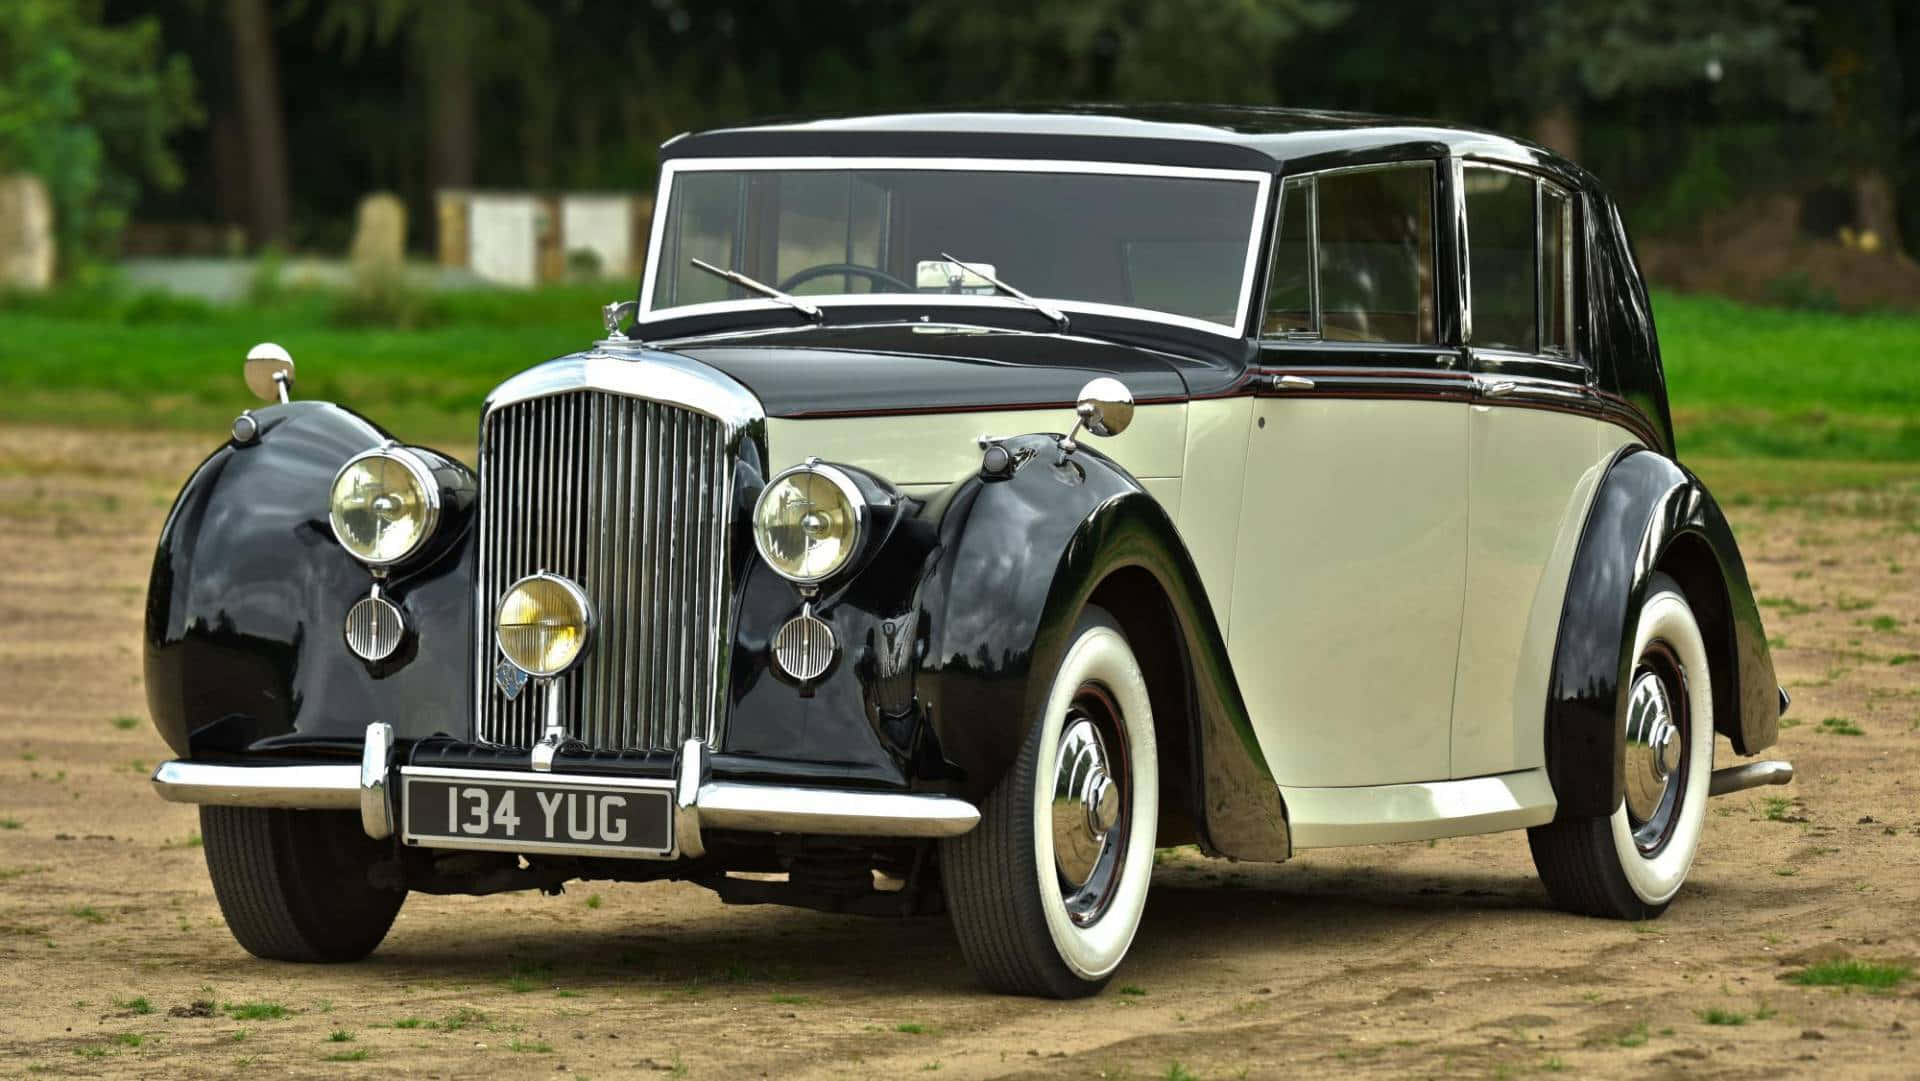 Caption: Vintage Elegance - Bentley Mark VI Wallpaper